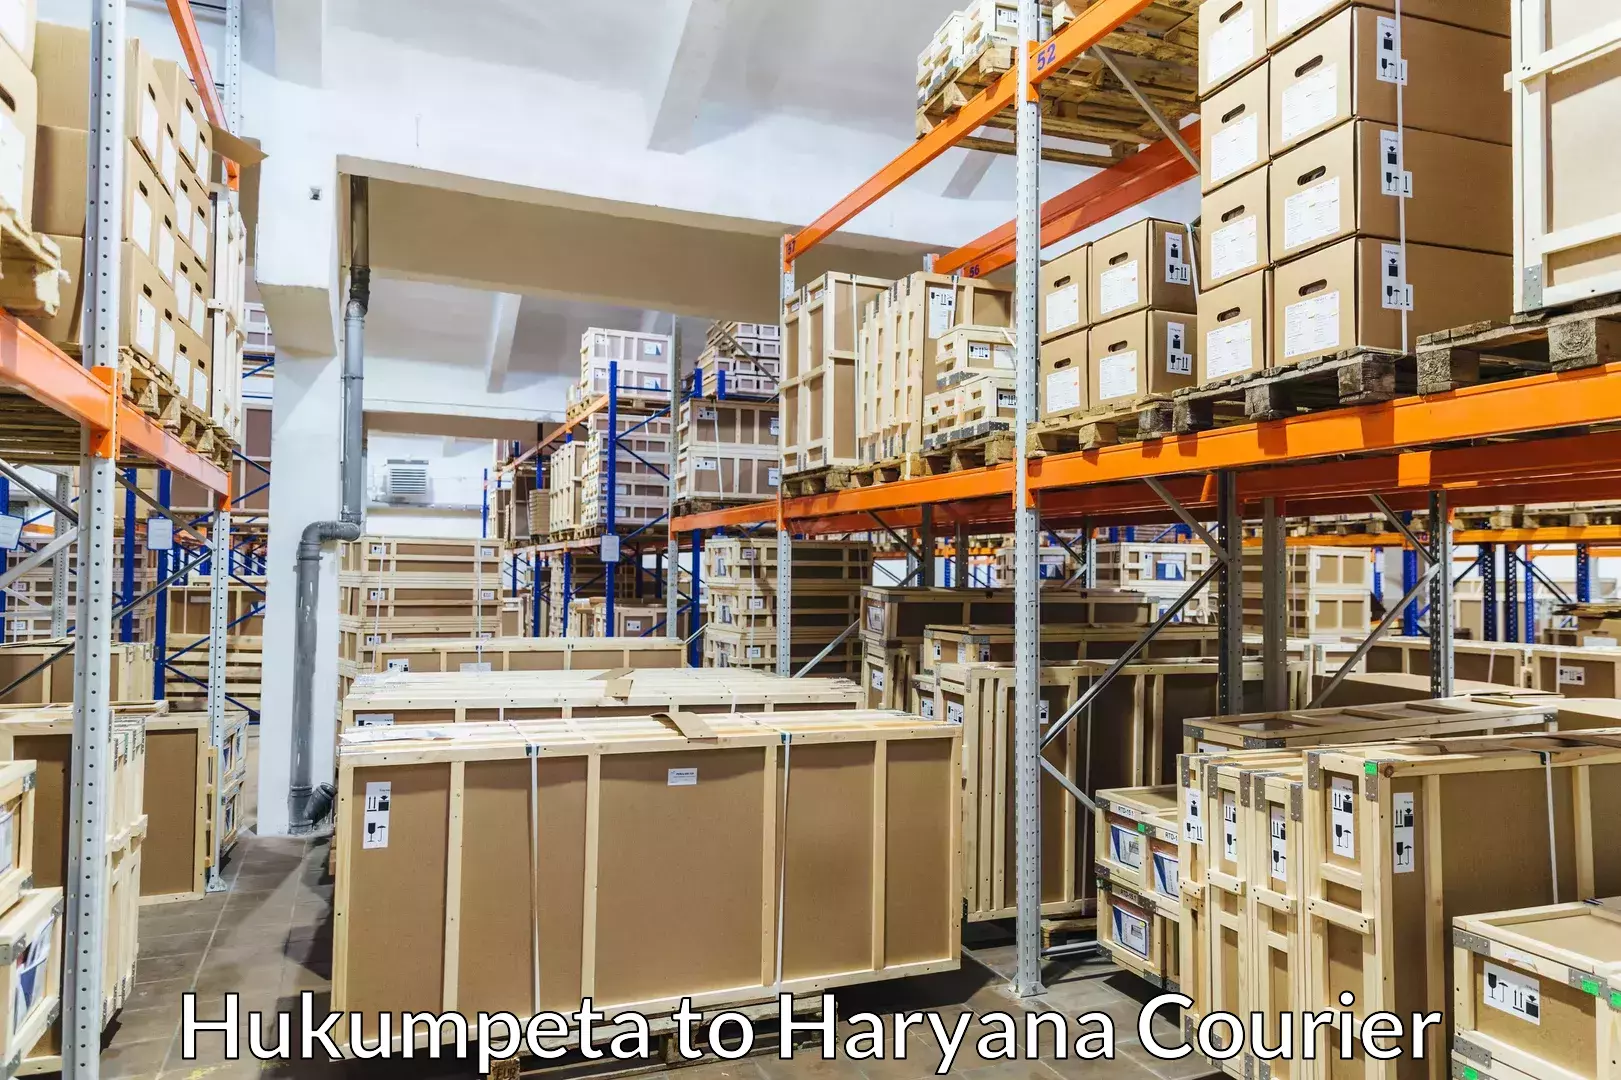 Home goods moving company Hukumpeta to Chirya